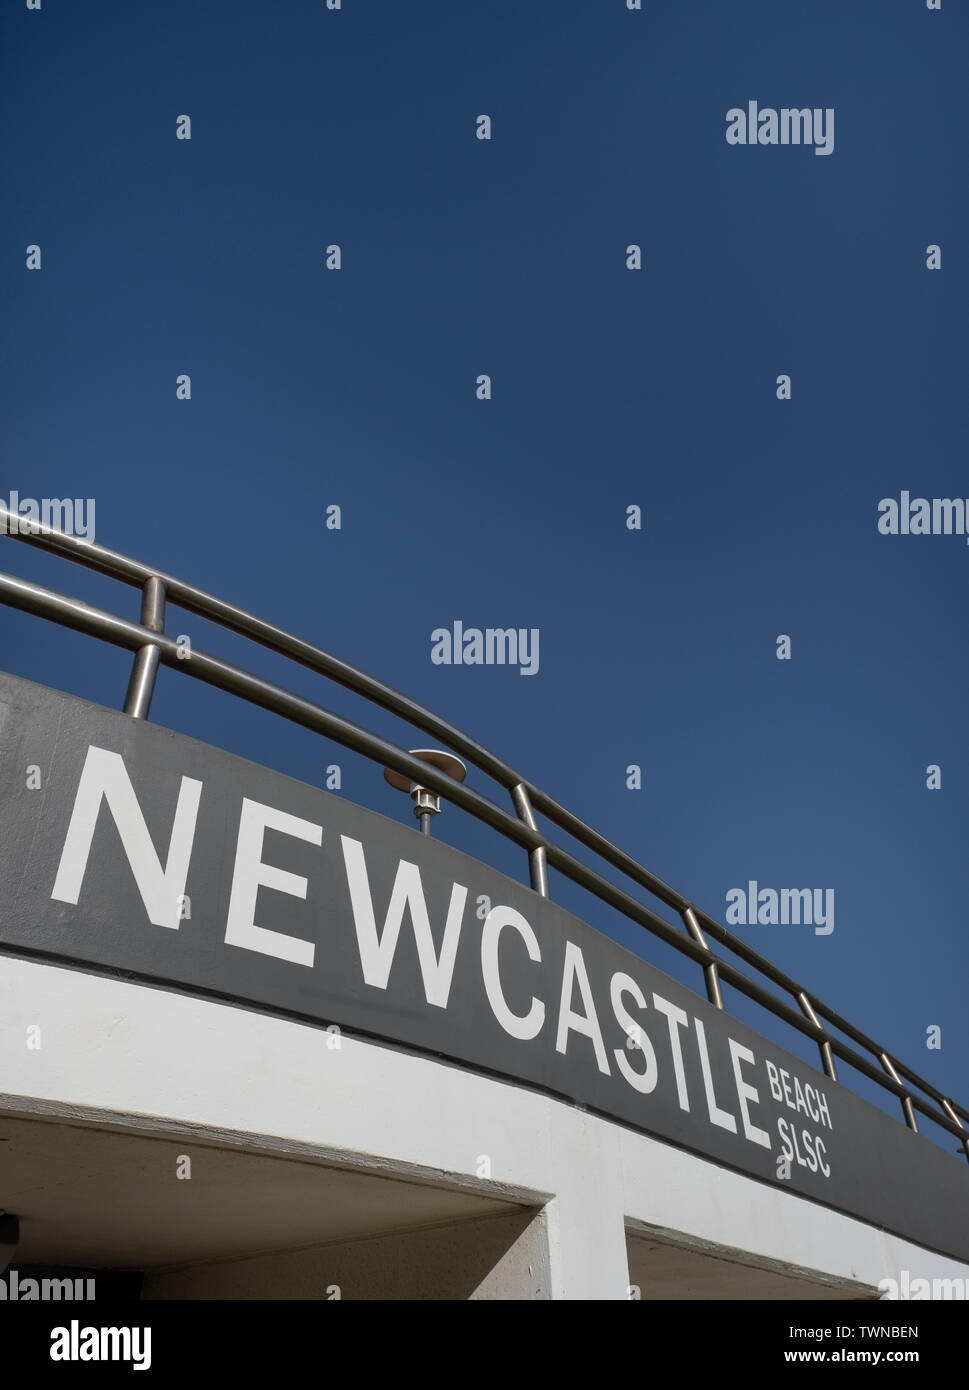 NEWCASTLE, AUSTRALIEN - Jule 10 2019 Newcastle Beach Surf Lifesaving Club außen vor einem klaren blauen Himmel Stockfoto